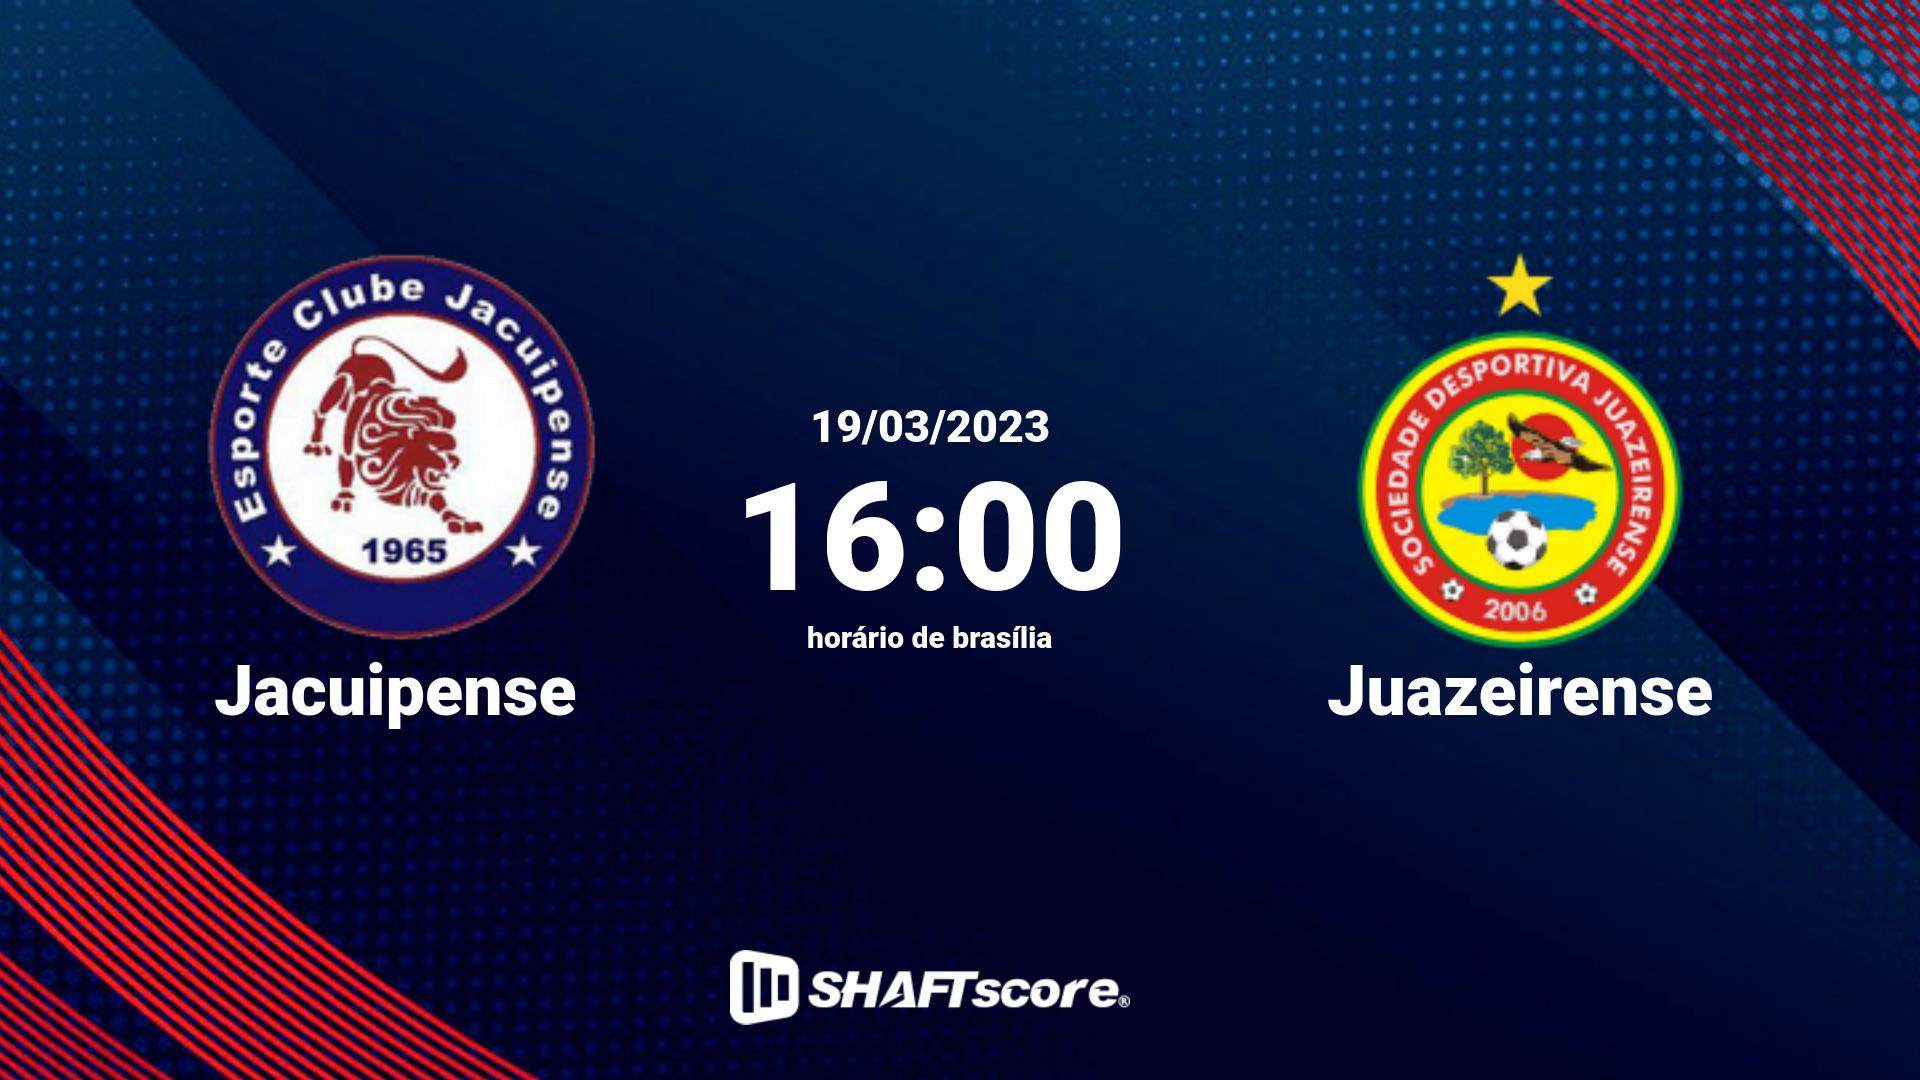 Estatísticas do jogo Jacuipense vs Juazeirense 19.03 16:00